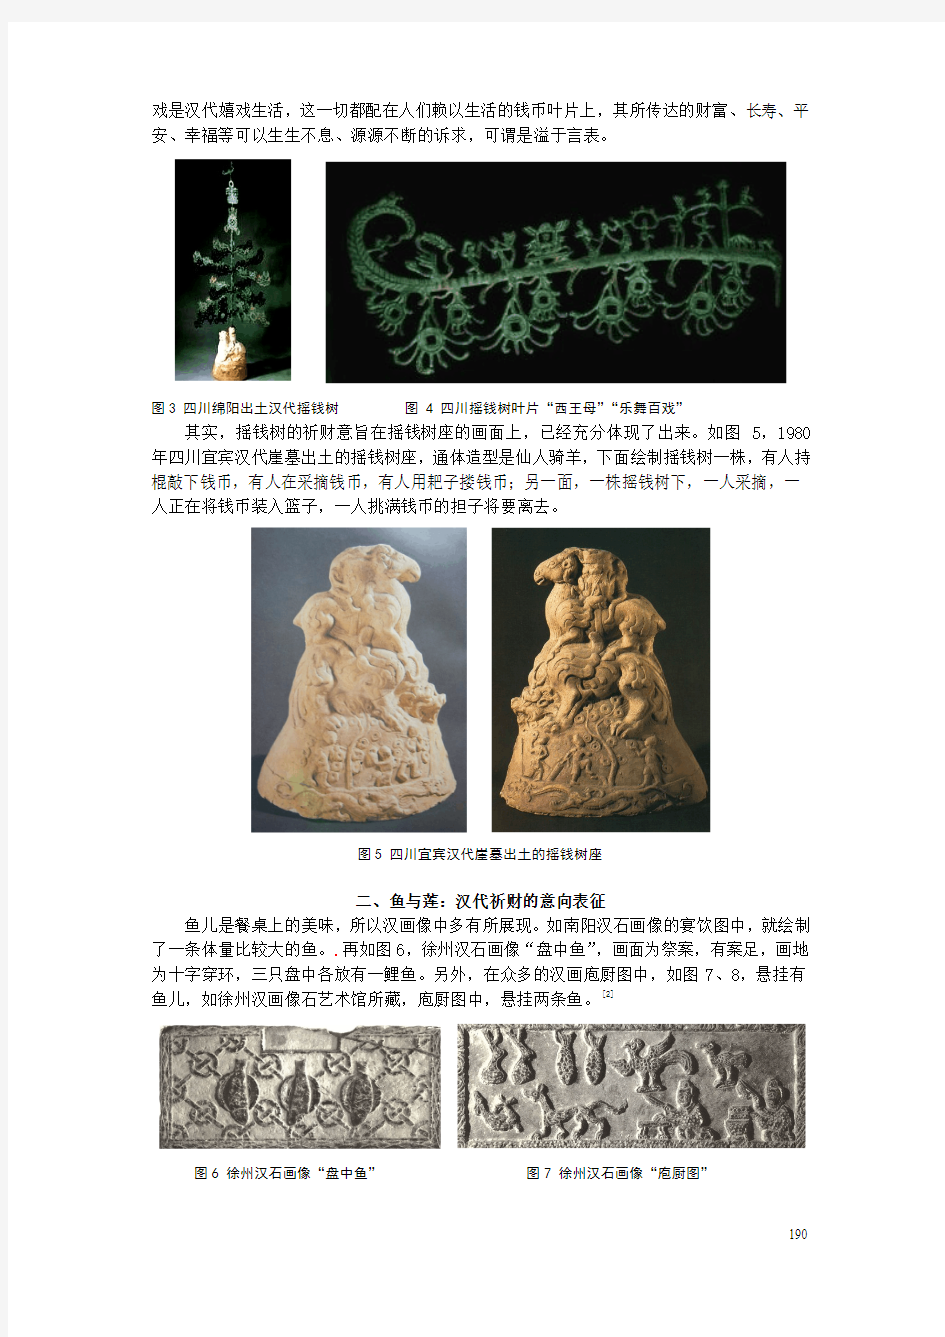 民间信仰视域下的汉代祈财仪式图释读-中国汉画学会